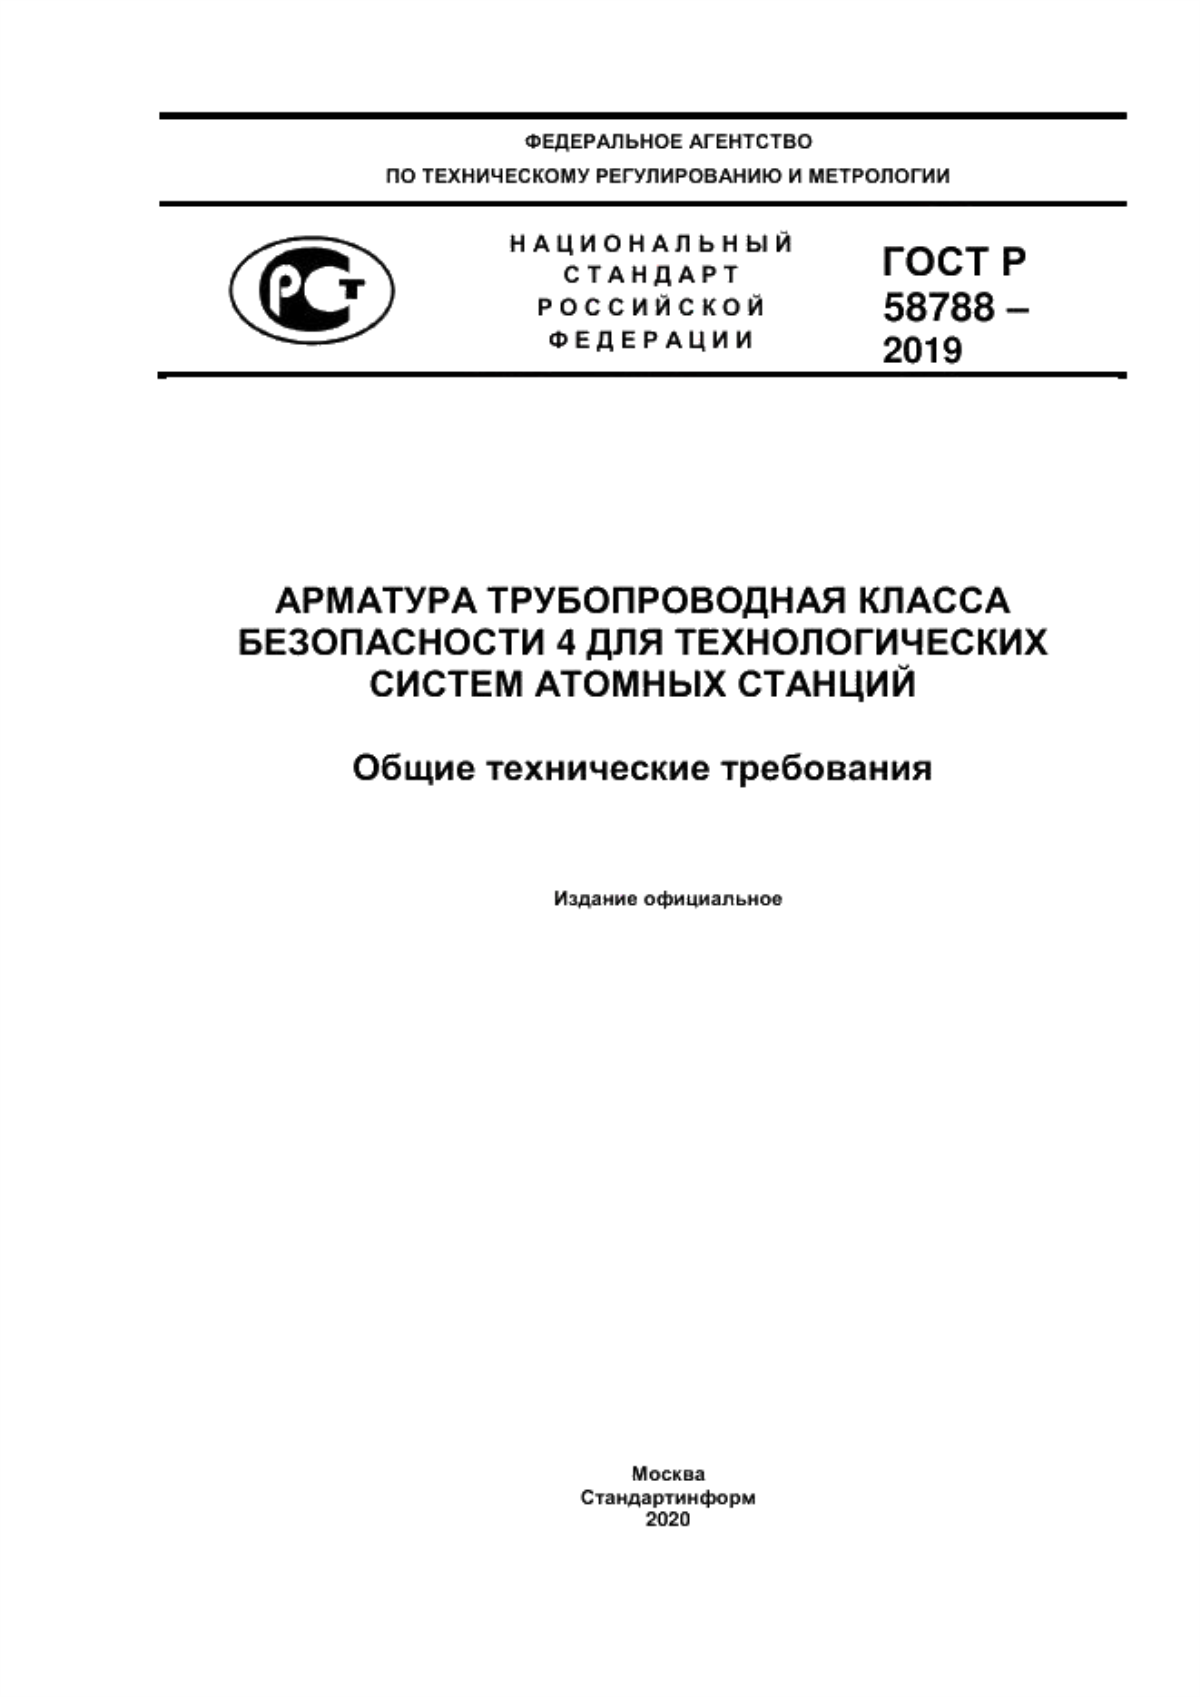 ГОСТ Р 58788-2019 Арматура трубопроводная класса безопасности 4 для технологических систем атомных станций. Общие технические требования